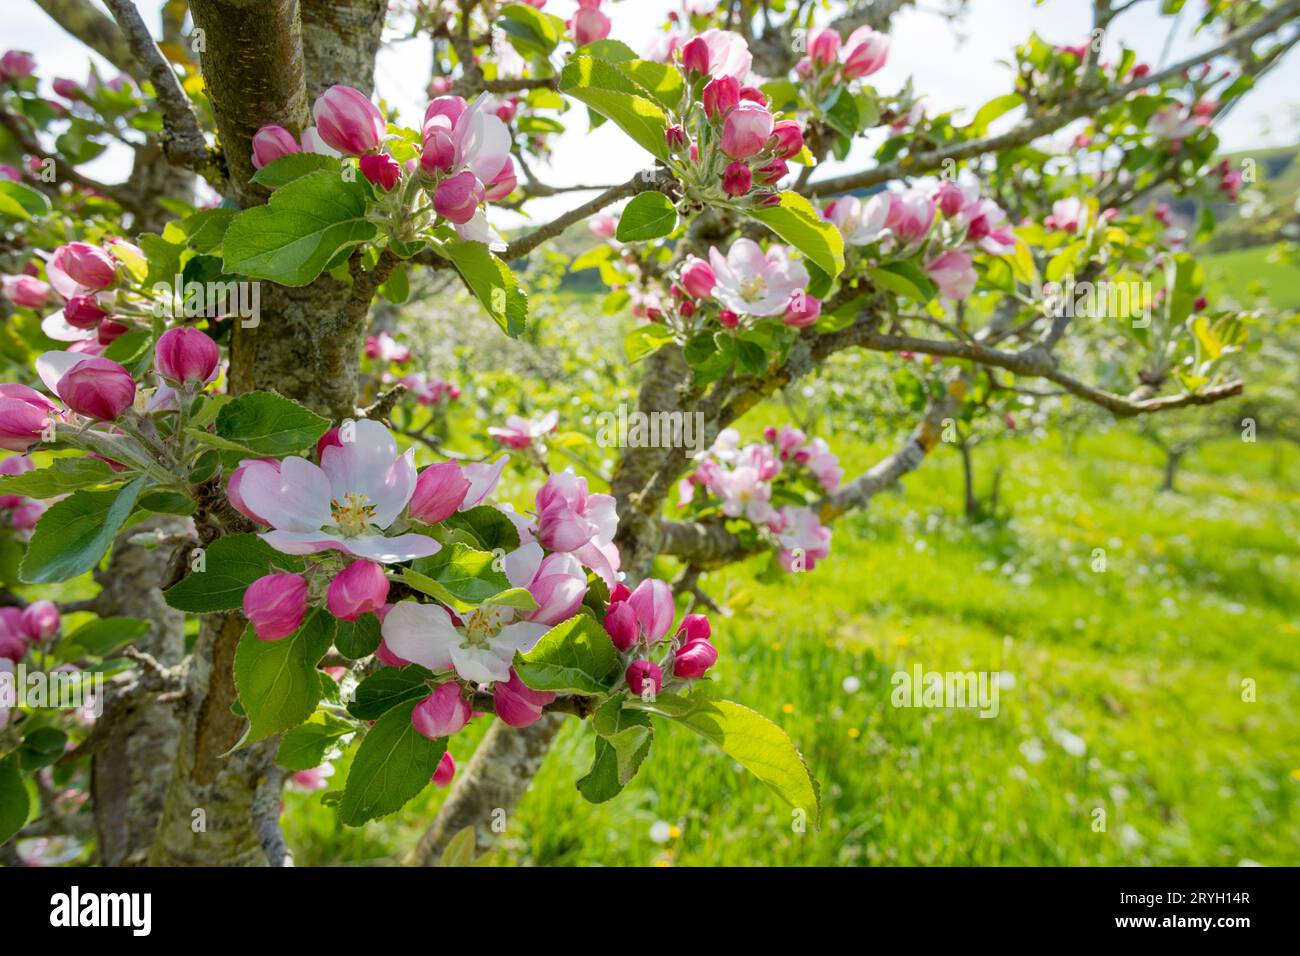 Fioritura su meli coltivati (Malus domestica) varietà "Arthur Turner" in un frutteto biologico. Powys, Galles. Maggio Foto Stock